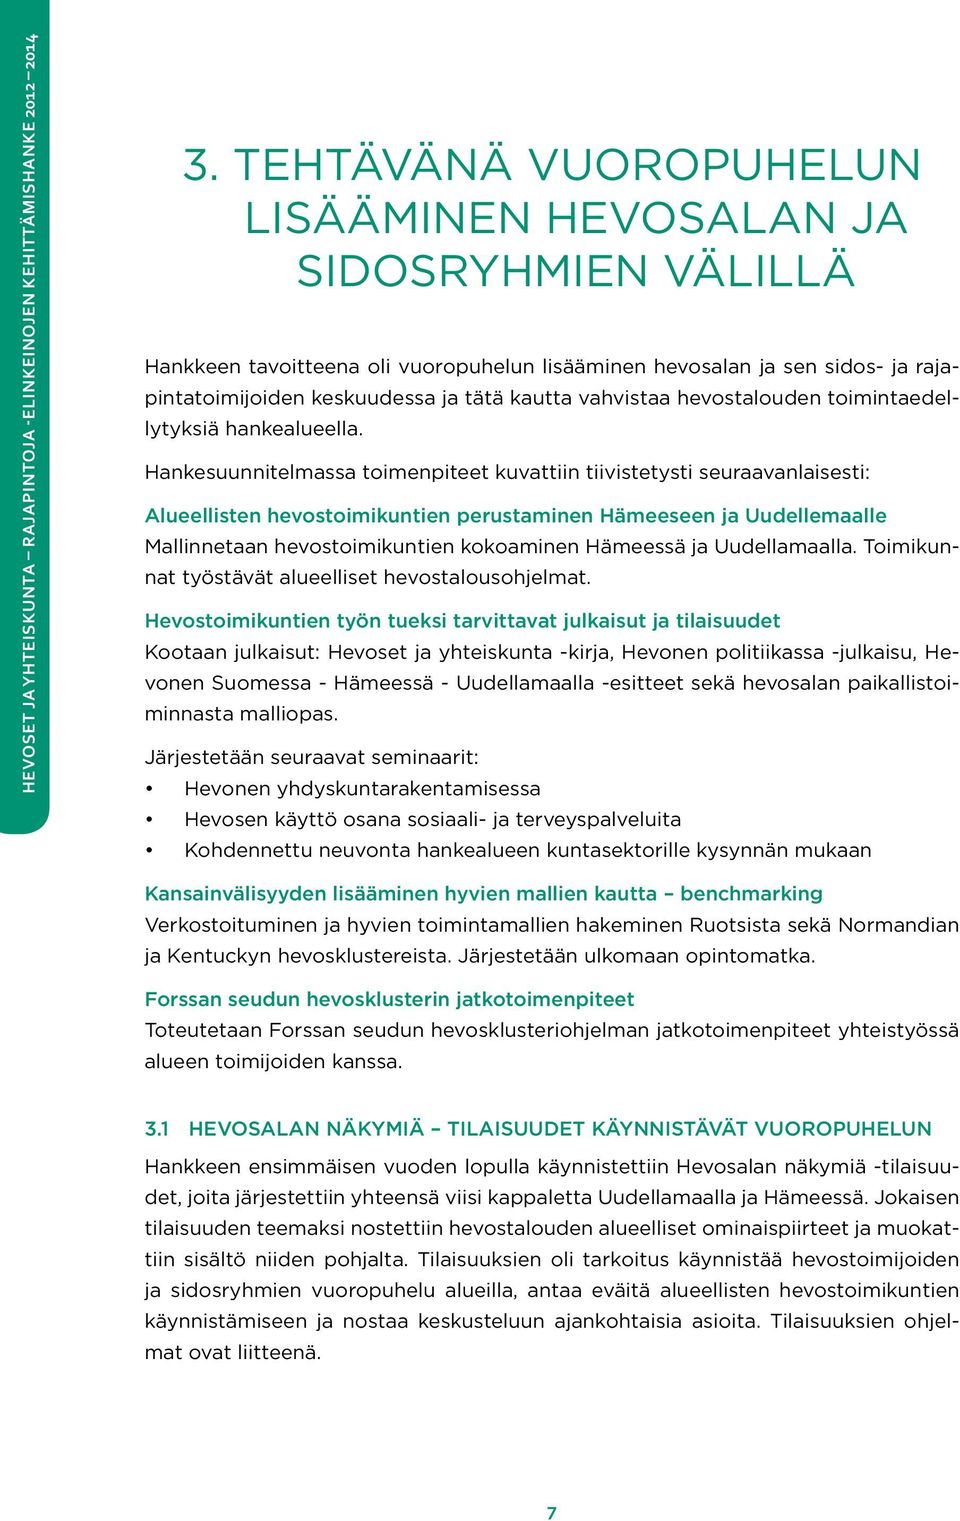 Hankesuunnitelmassa toimenpiteet kuvattiin tiivistetysti seuraavanlaisesti: Alueellisten hevostoimikuntien perustaminen Hämeeseen ja Uudellemaalle Mallinnetaan hevostoimikuntien kokoaminen Hämeessä